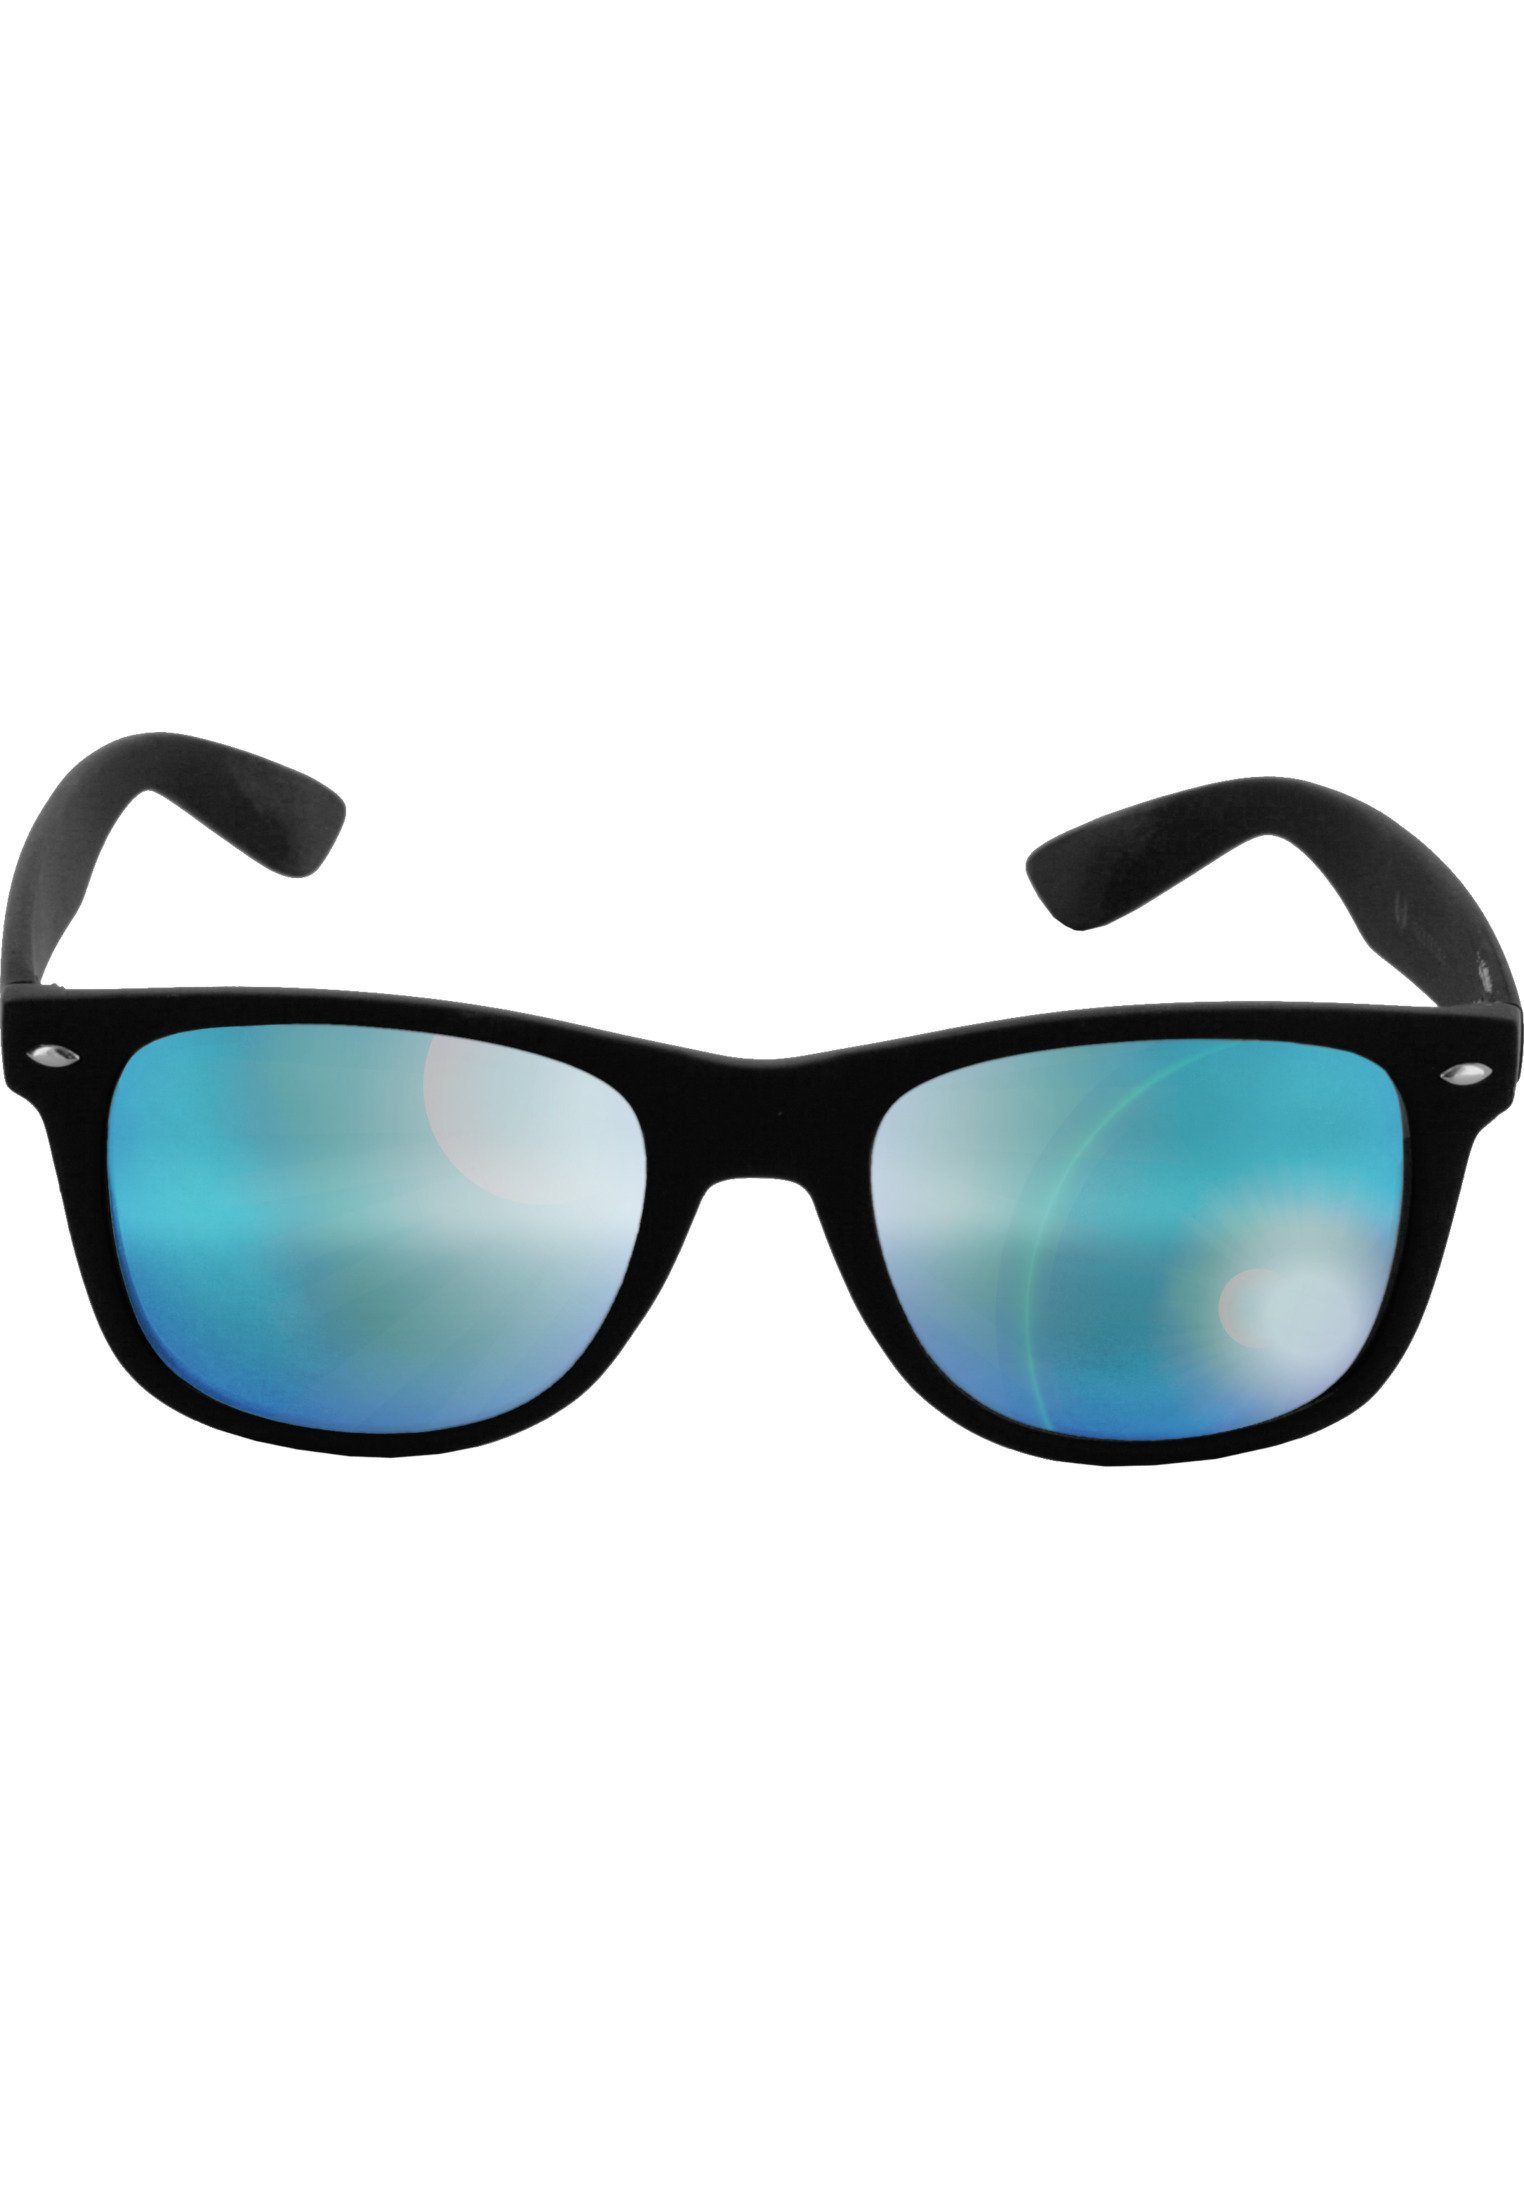 MSTRDS Sonnenbrille Accessoires Sunglasses Likoma Mirror blk/blue | Sonnenbrillen